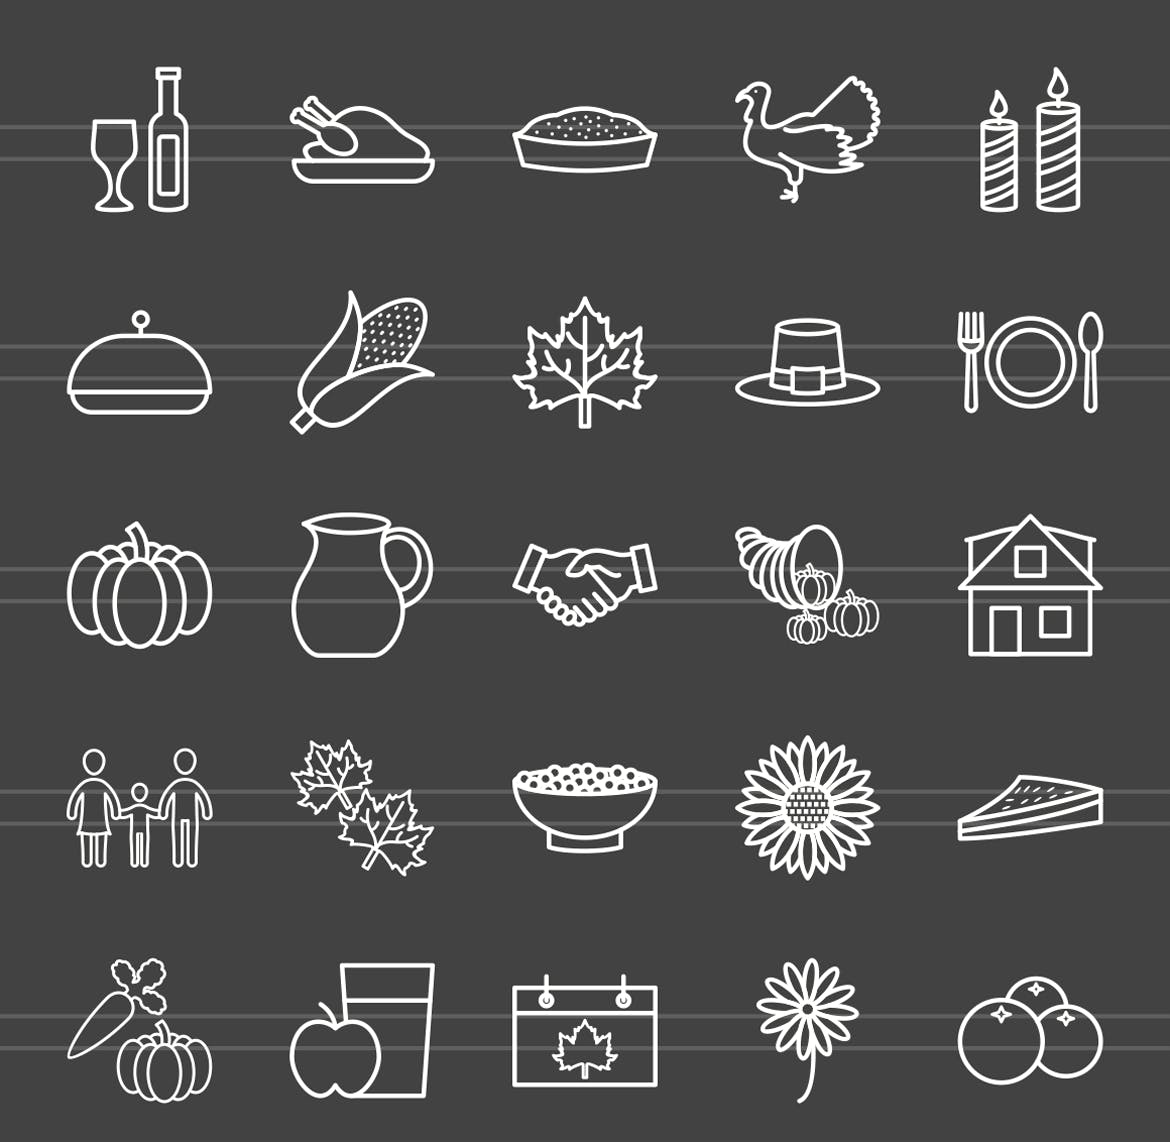 50枚感恩节主题反转色矢量线性蚂蚁素材精选图标 50 Thanksgiving Line Inverted Icons插图(1)